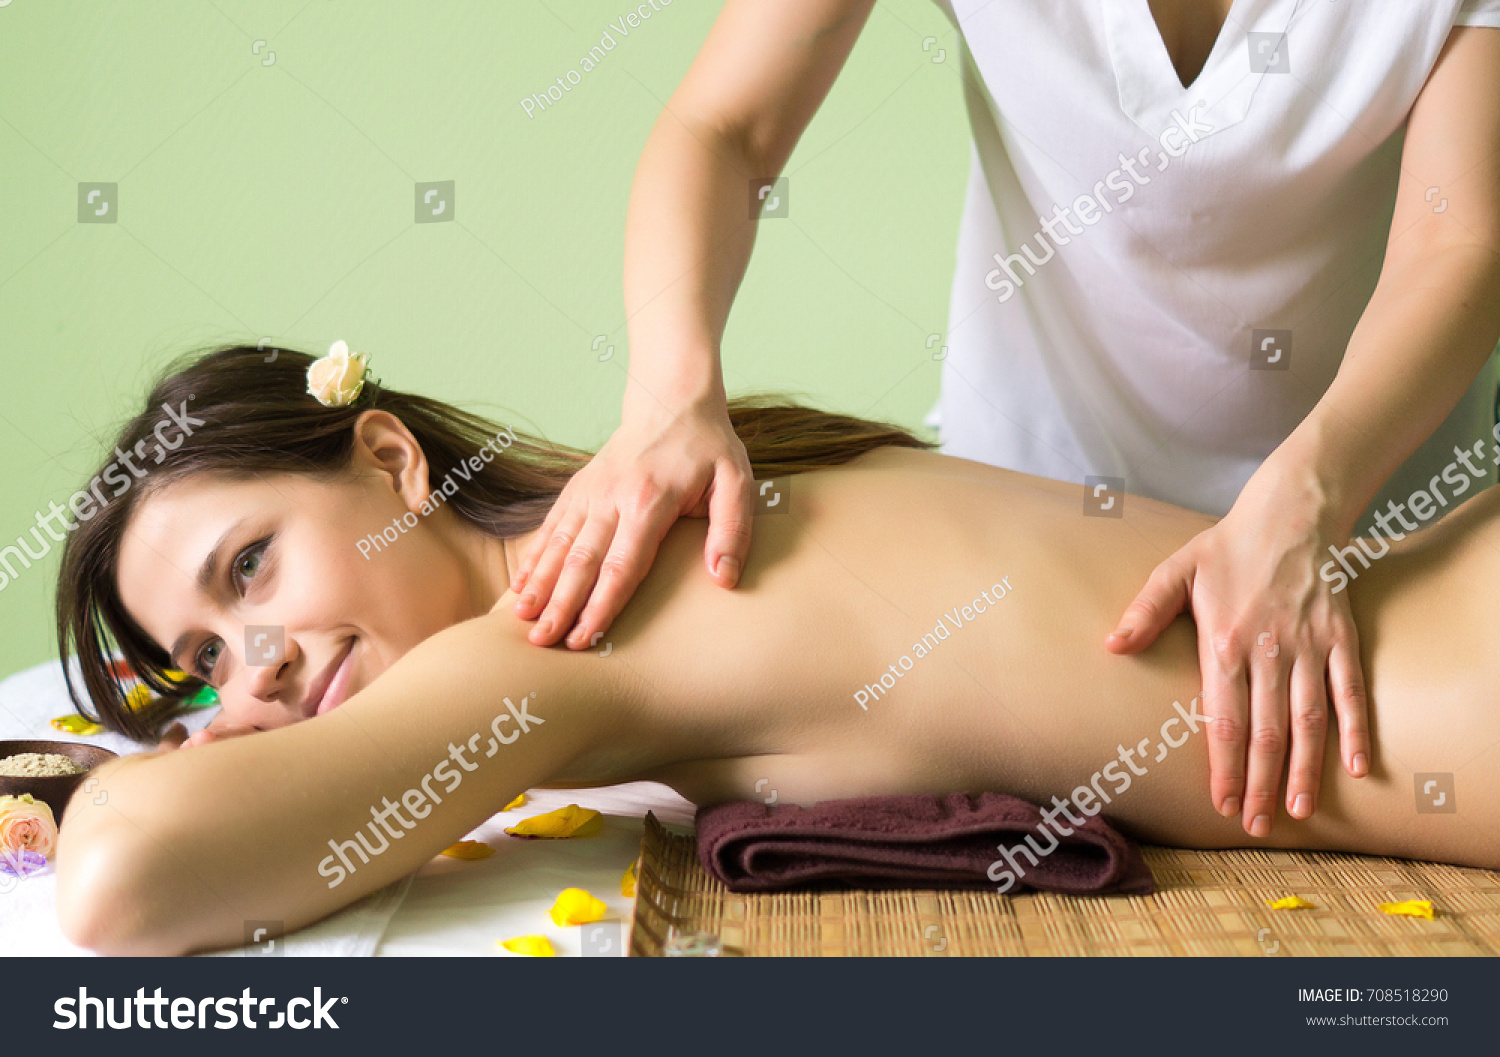 Naked massage female